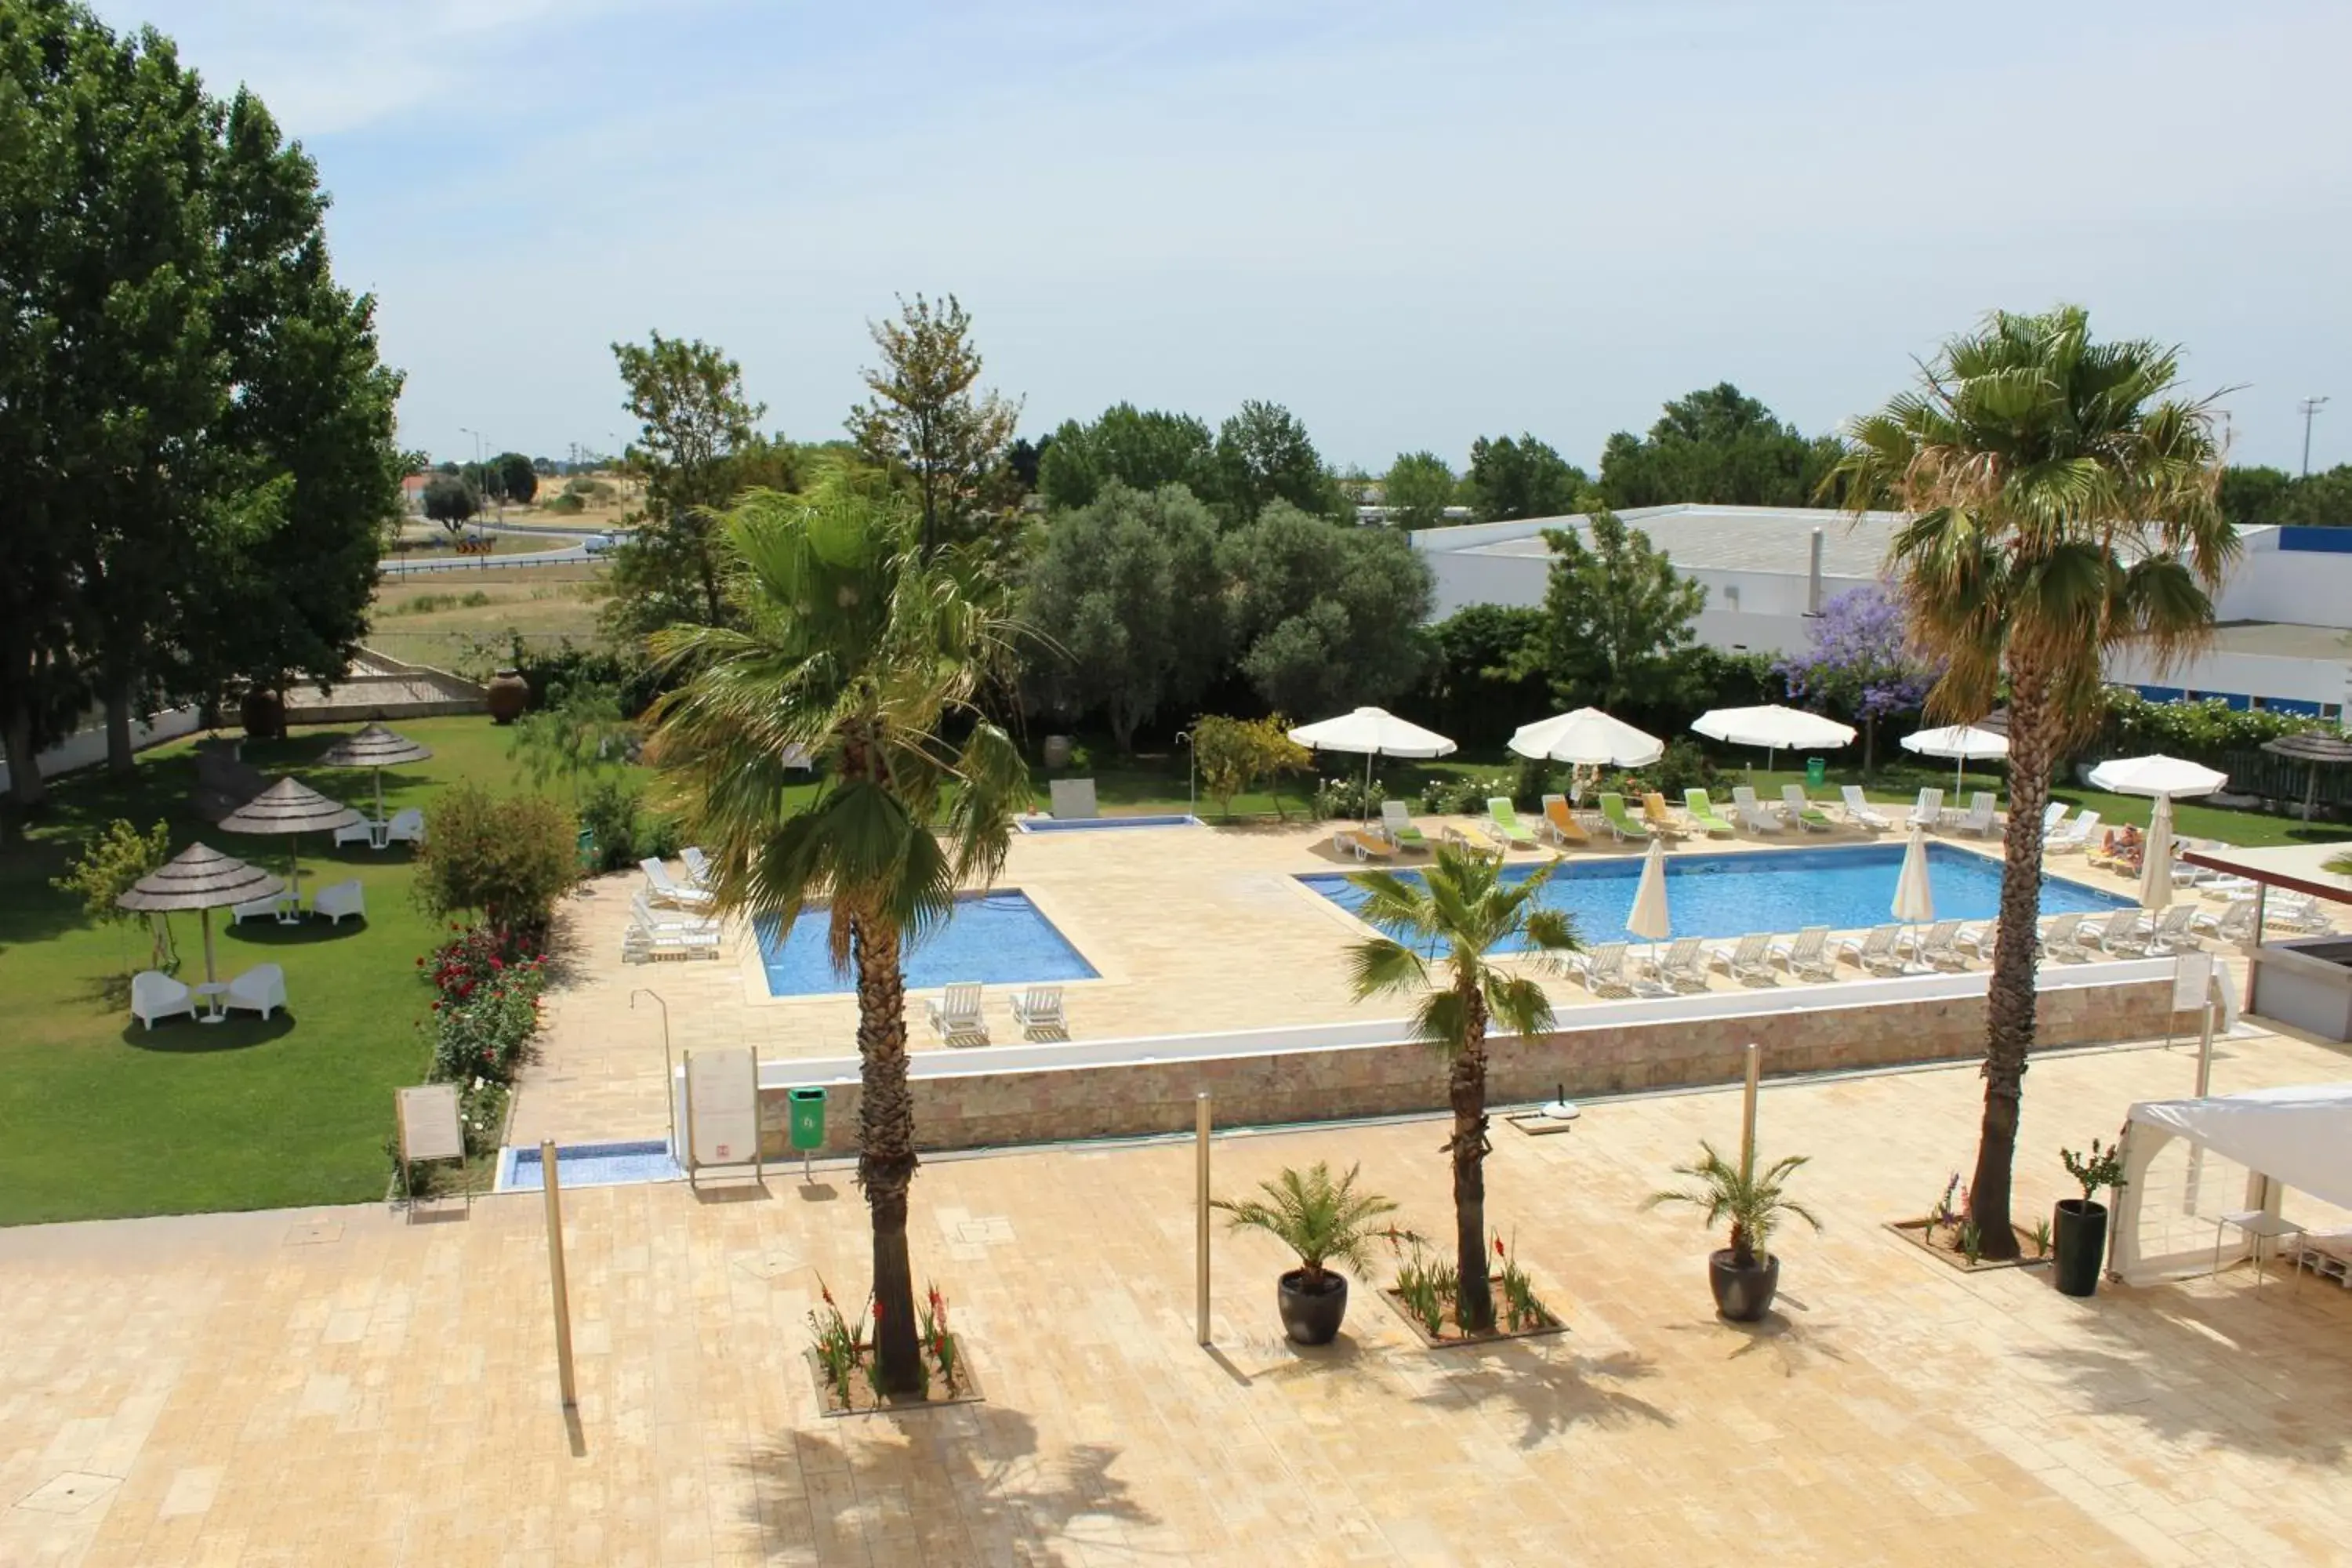 Garden, Pool View in BejaParque Hotel